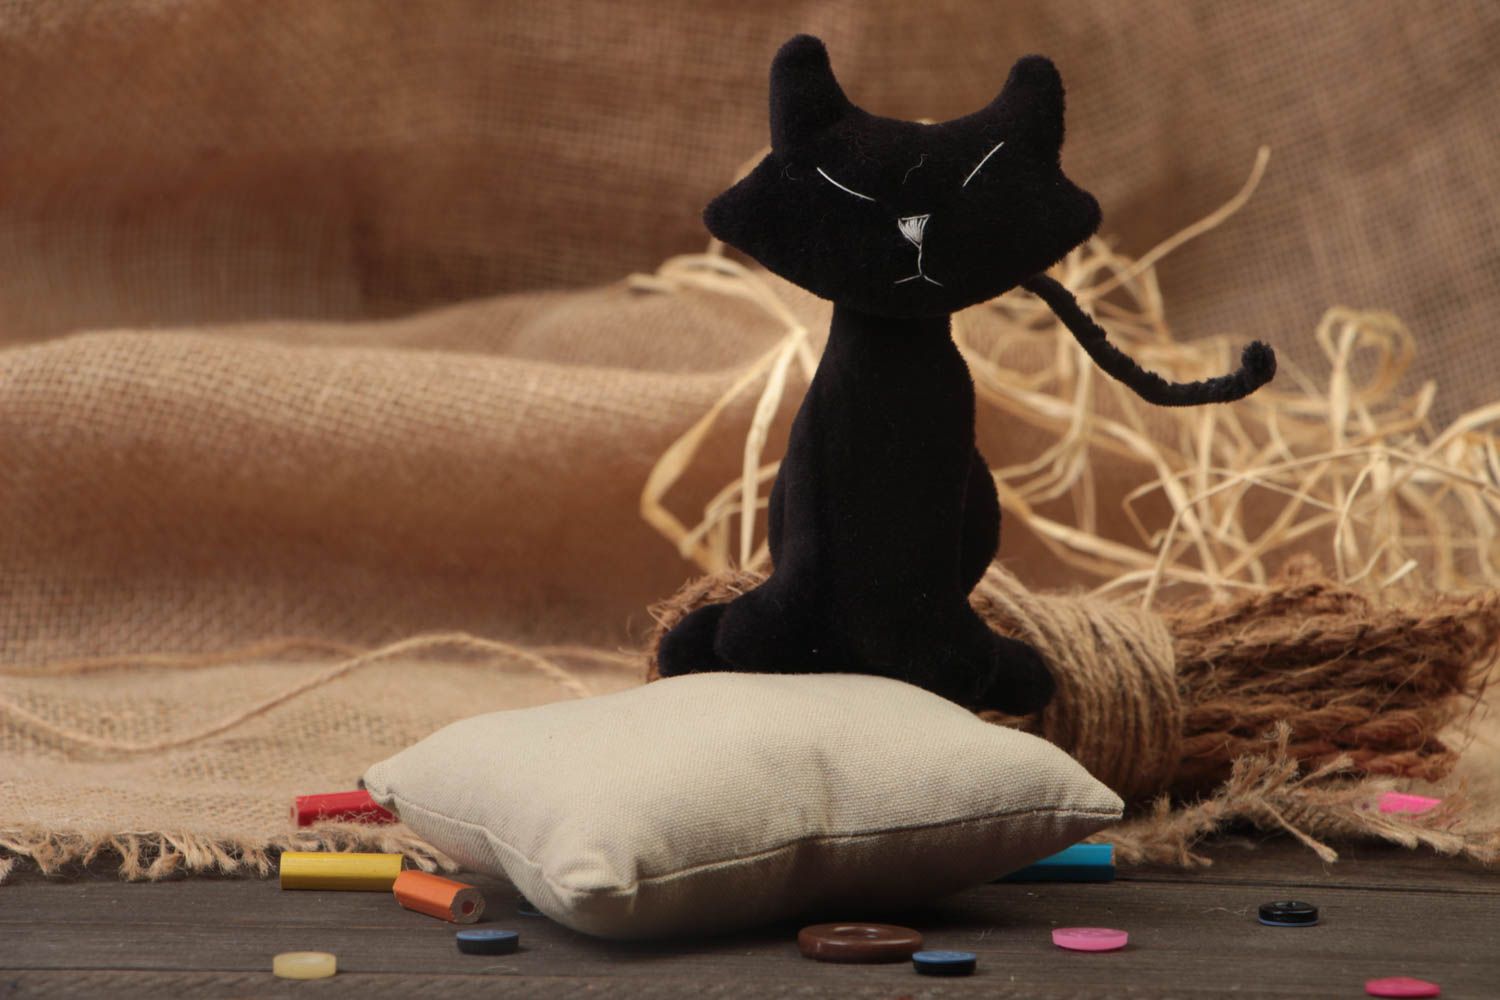 Handmade Stoff Kuscheltier Katze schwarz aus Fleece schön originell für Kind foto 1